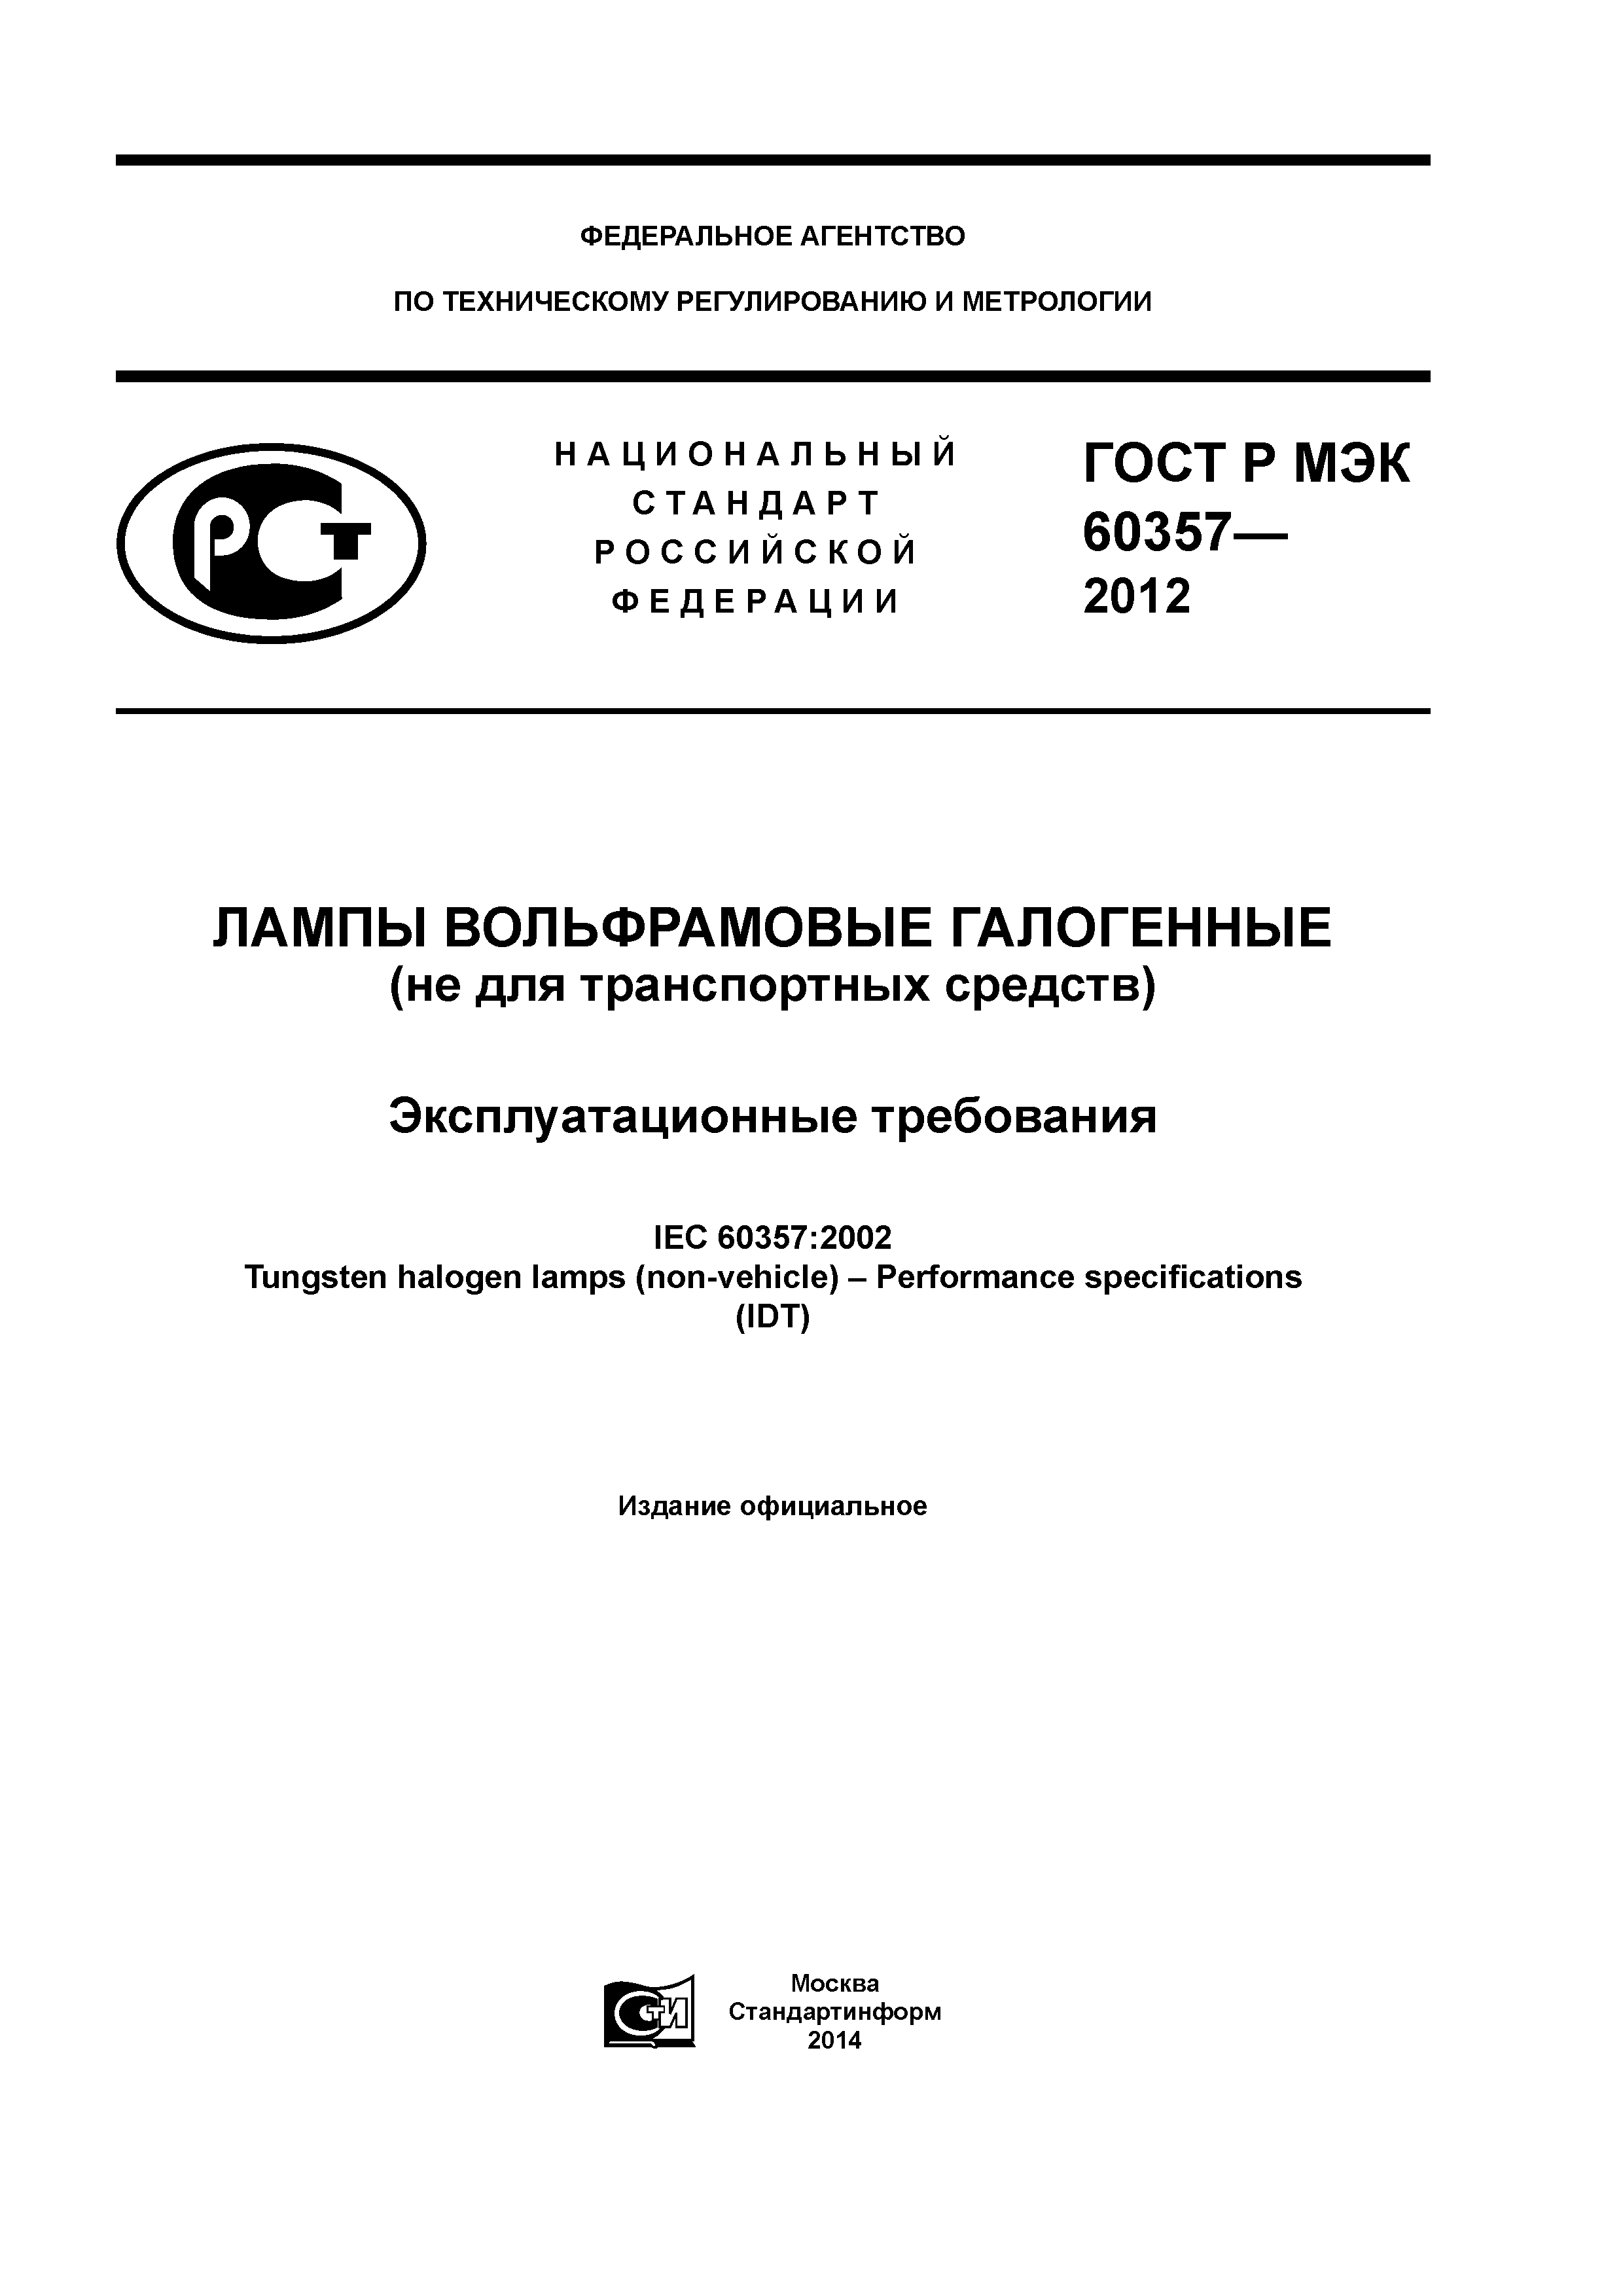 ГОСТ Р МЭК 60357-2012